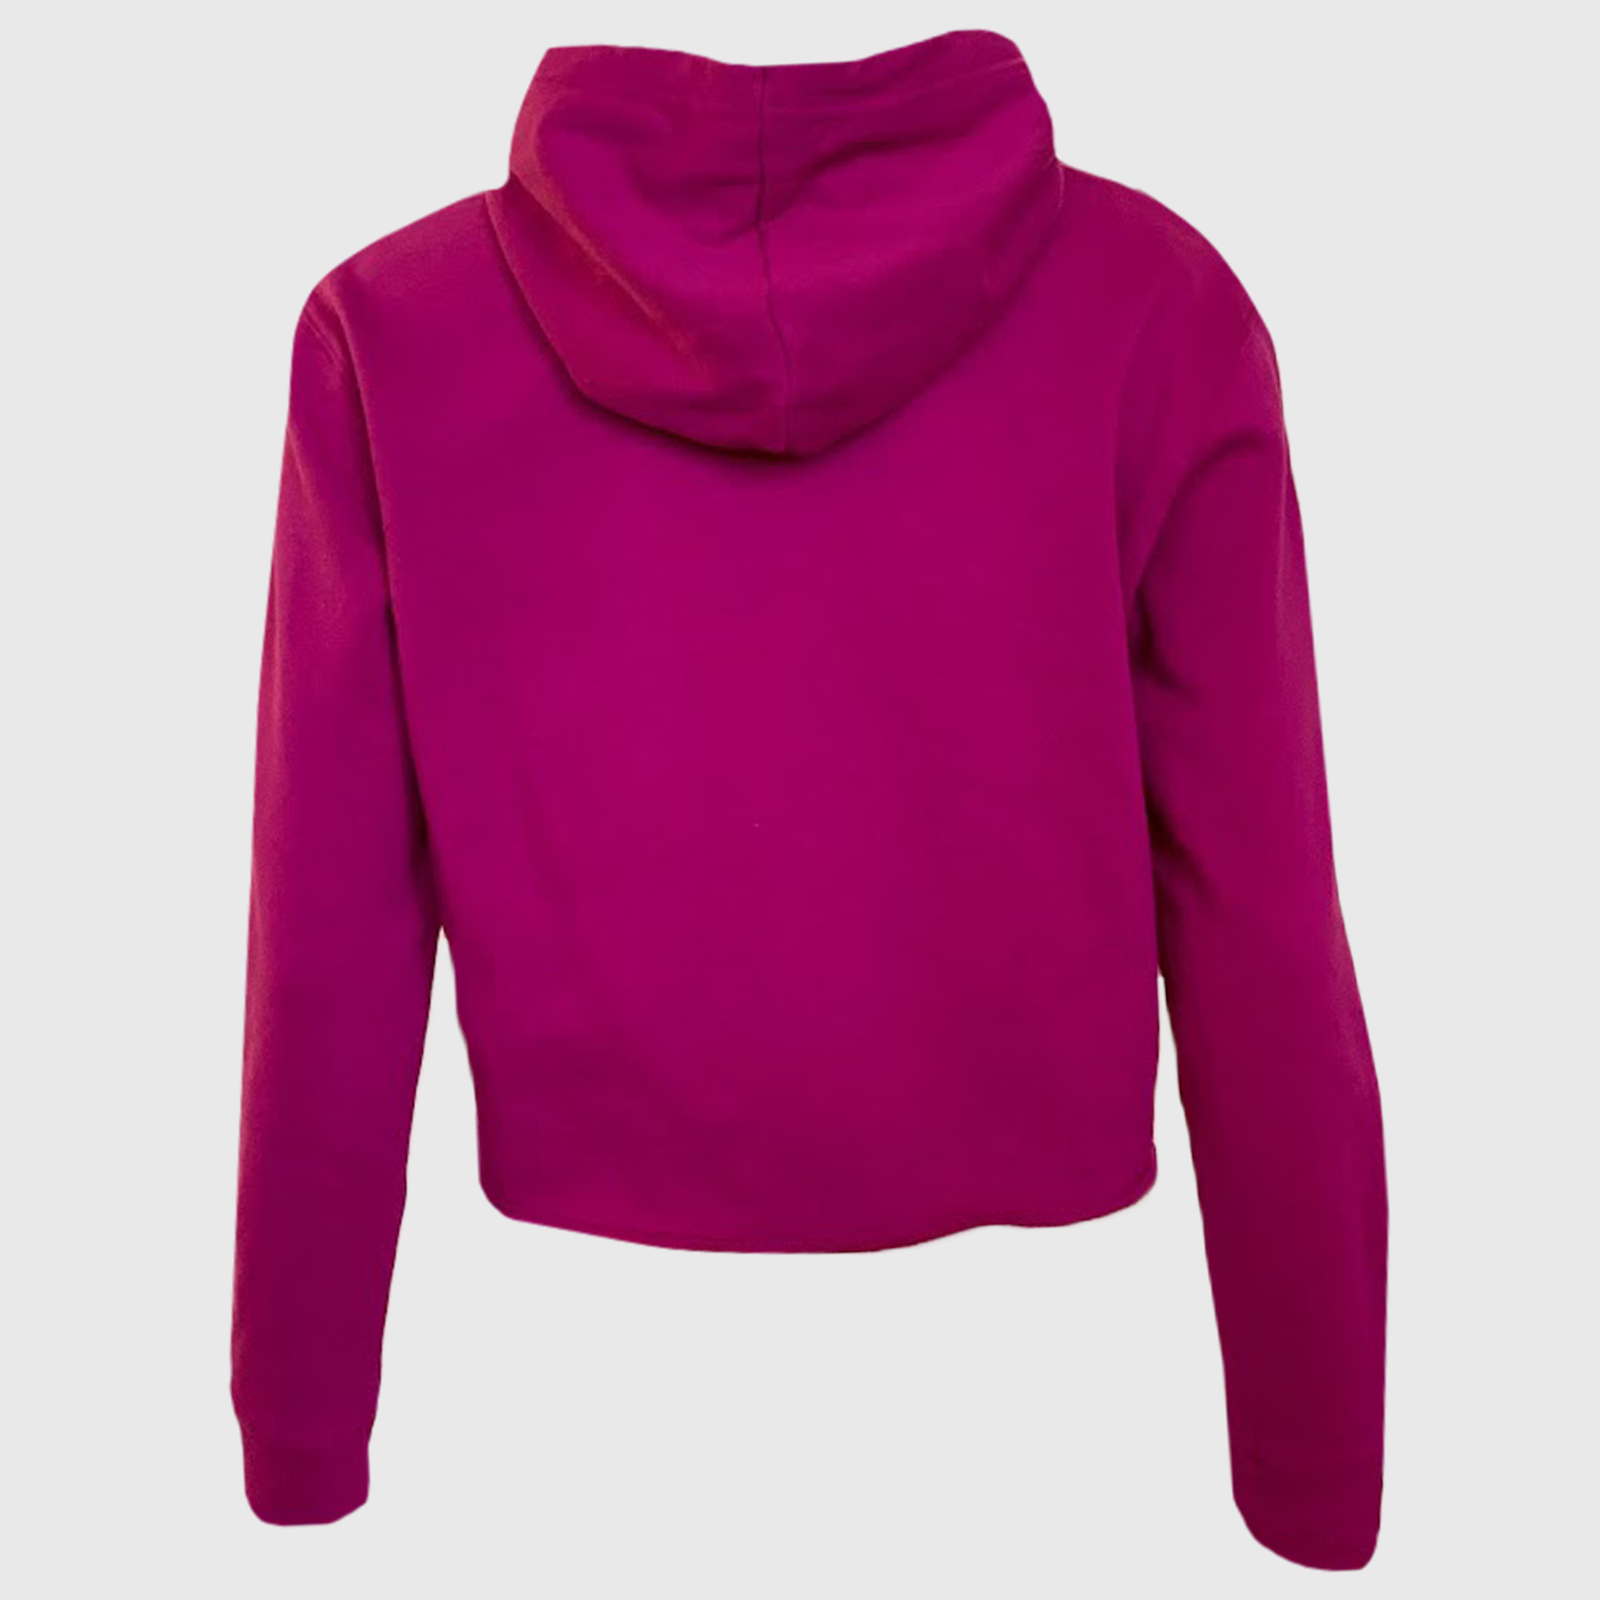 Купить в интернет магазине женскую кофту пуловер с капюшоном  